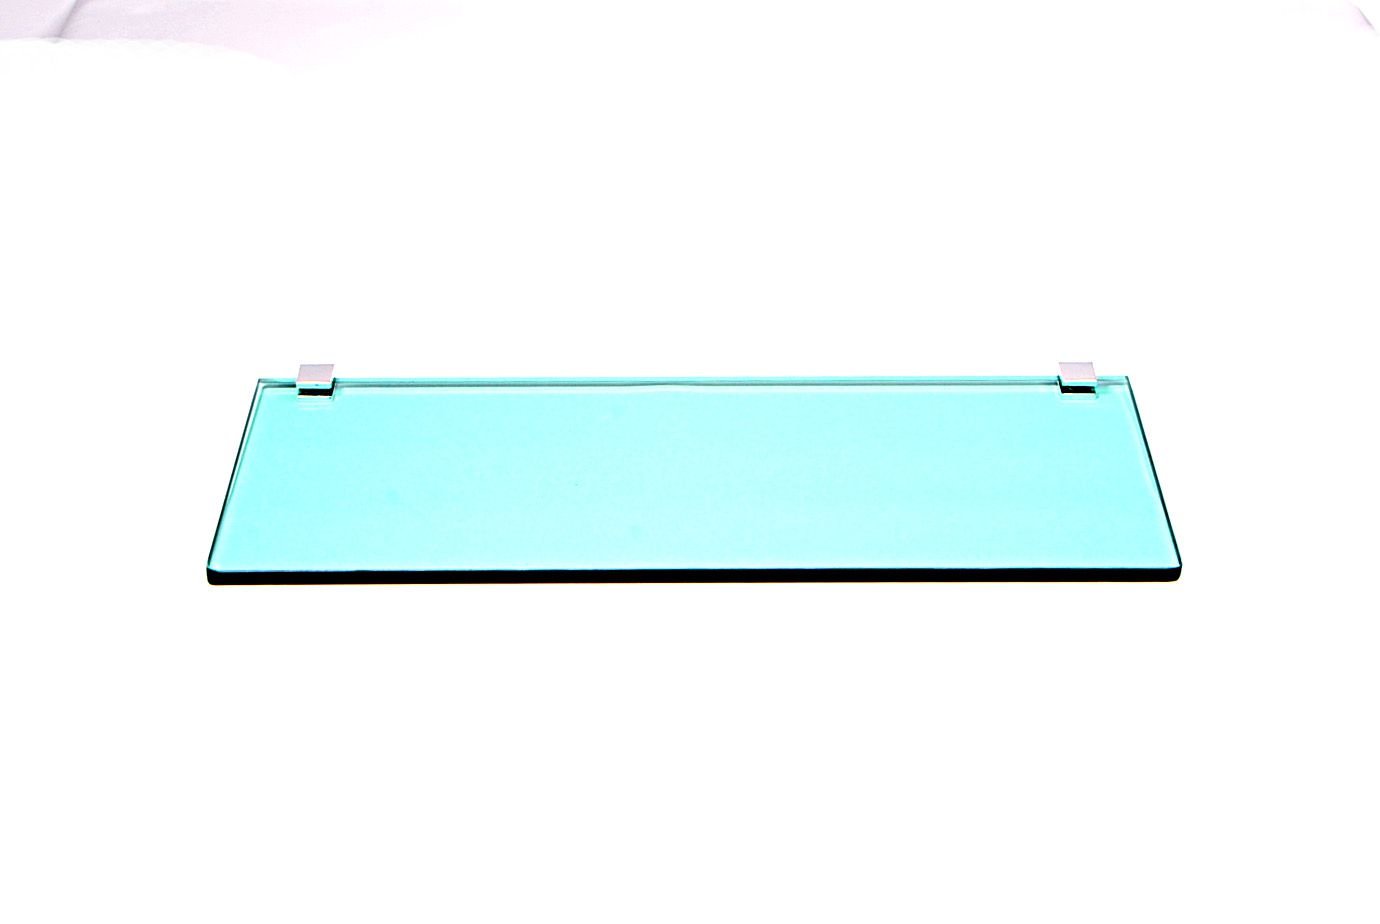 Porta Shampoo Reto em Vidro Verde Lapidado - Aquabox - 40cmx14cmx8mm - 1